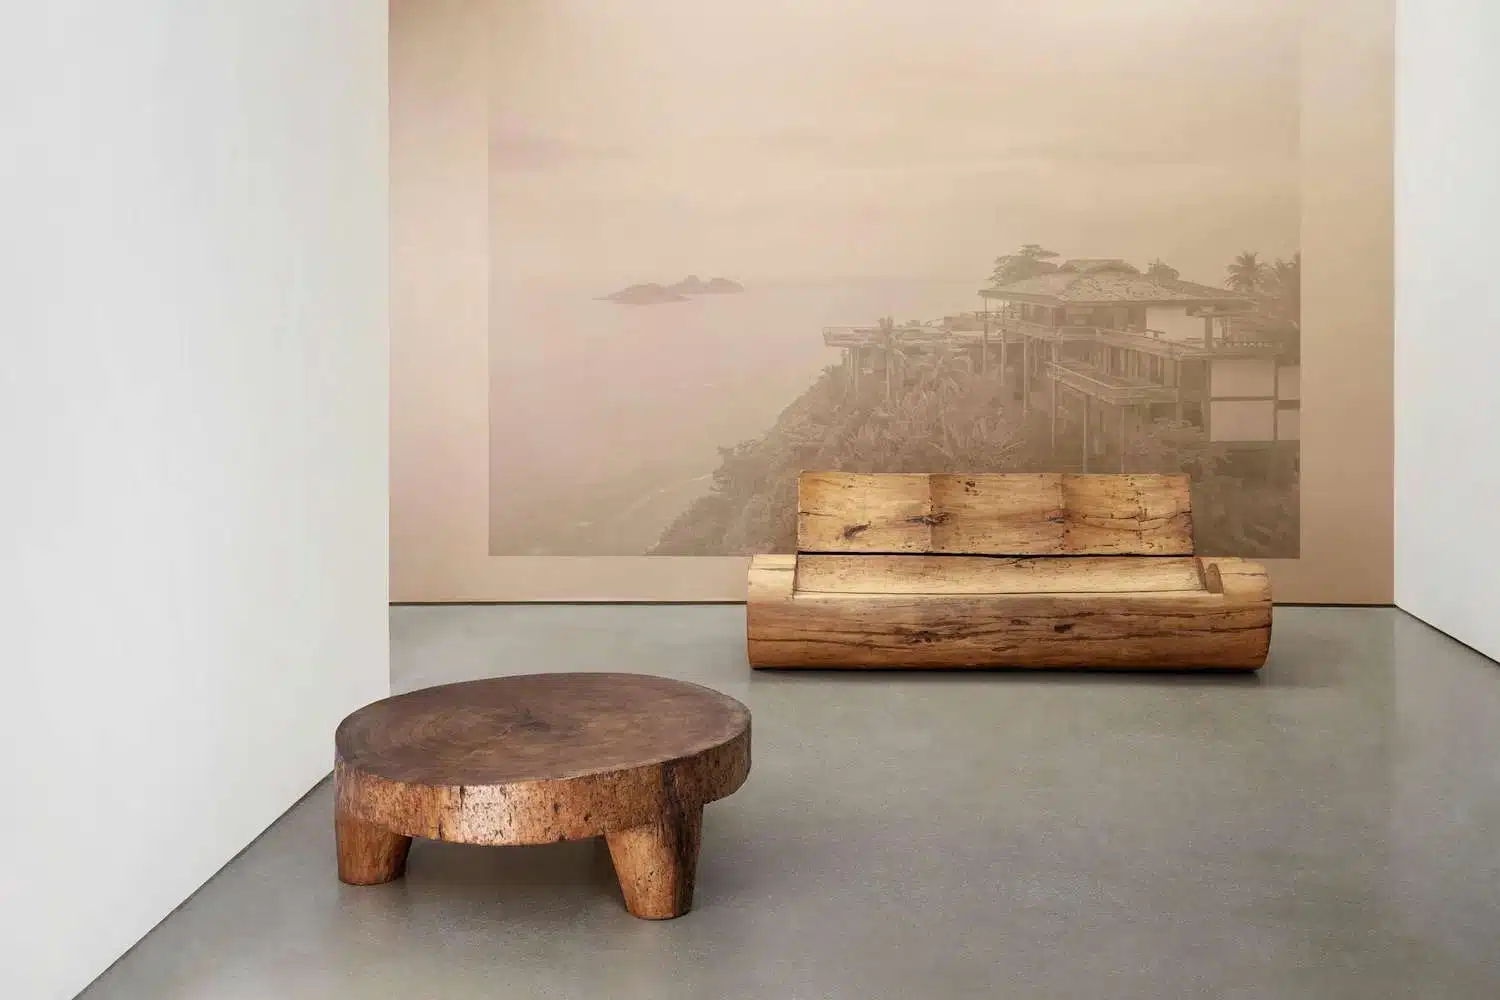 Carpenters Workshop Gallery. mobiliario sostenible. José Zanine Caldas